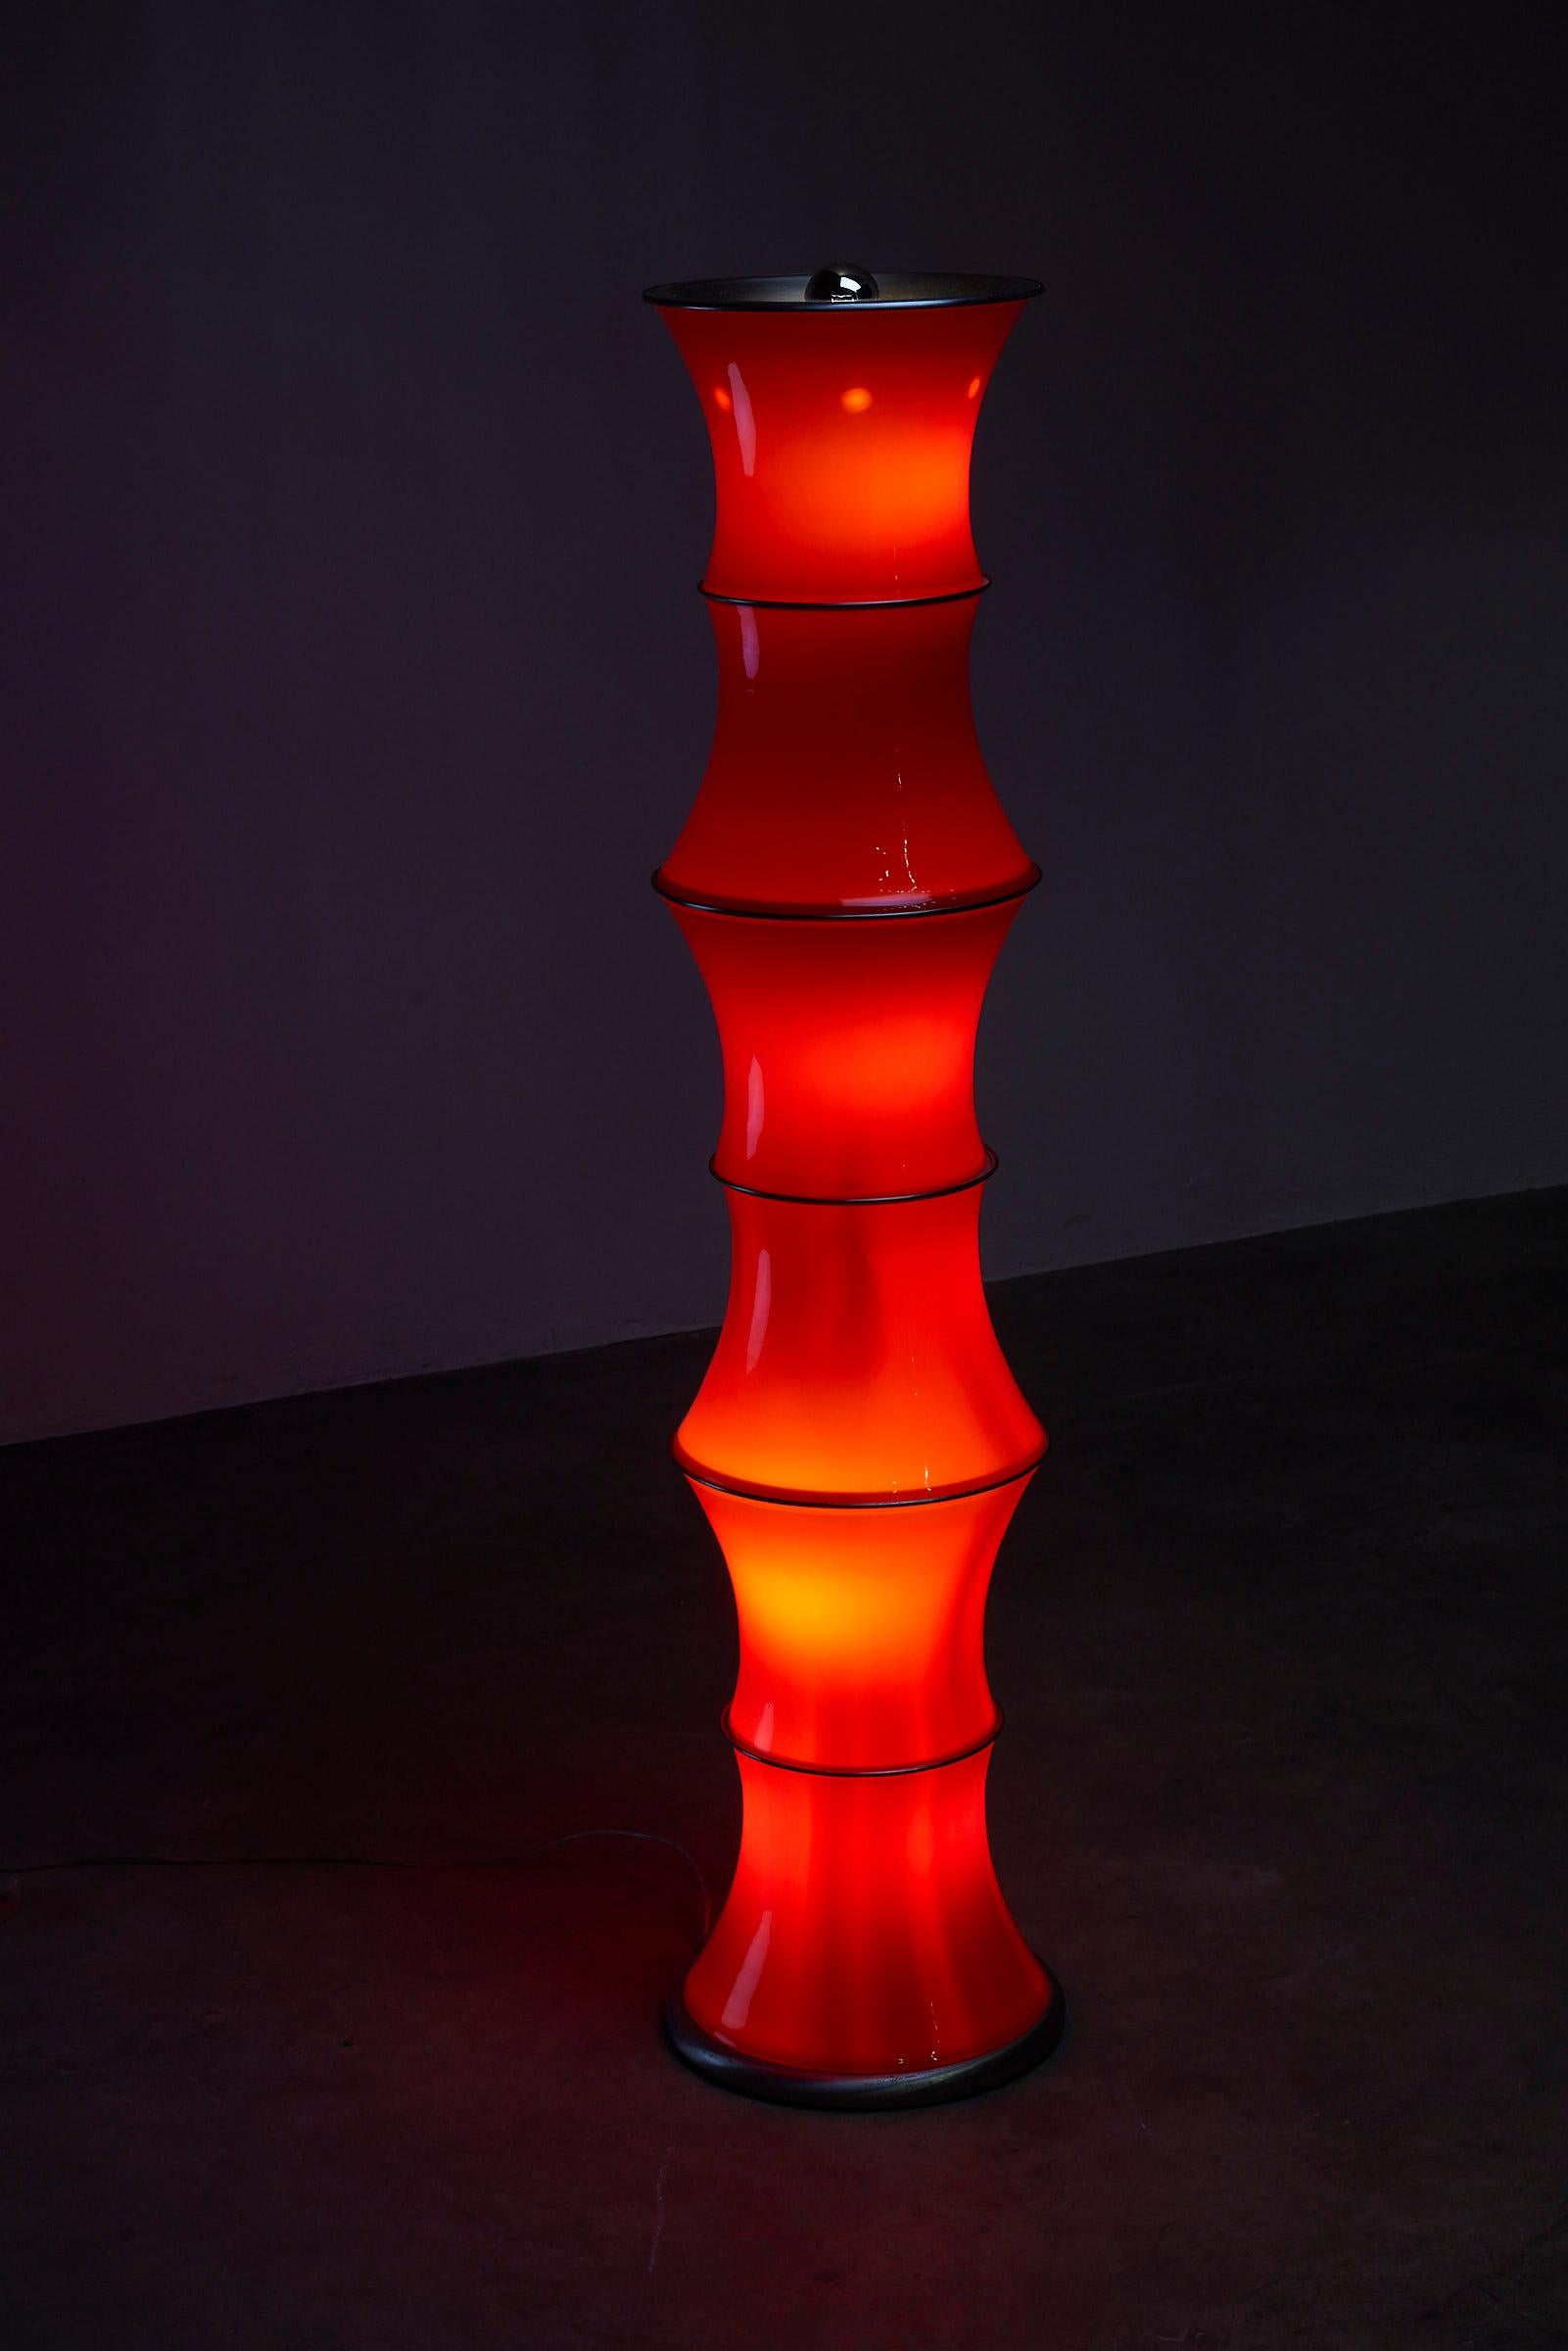 Voici un superbe lampadaire inspiré de l'esthétique du bambou. Fabriquée avec des formes en verre rouge séparées par des éléments métalliques pour le soutien structurel, cette pièce émane de l'élégance et de la sophistication. Le variateur incorporé